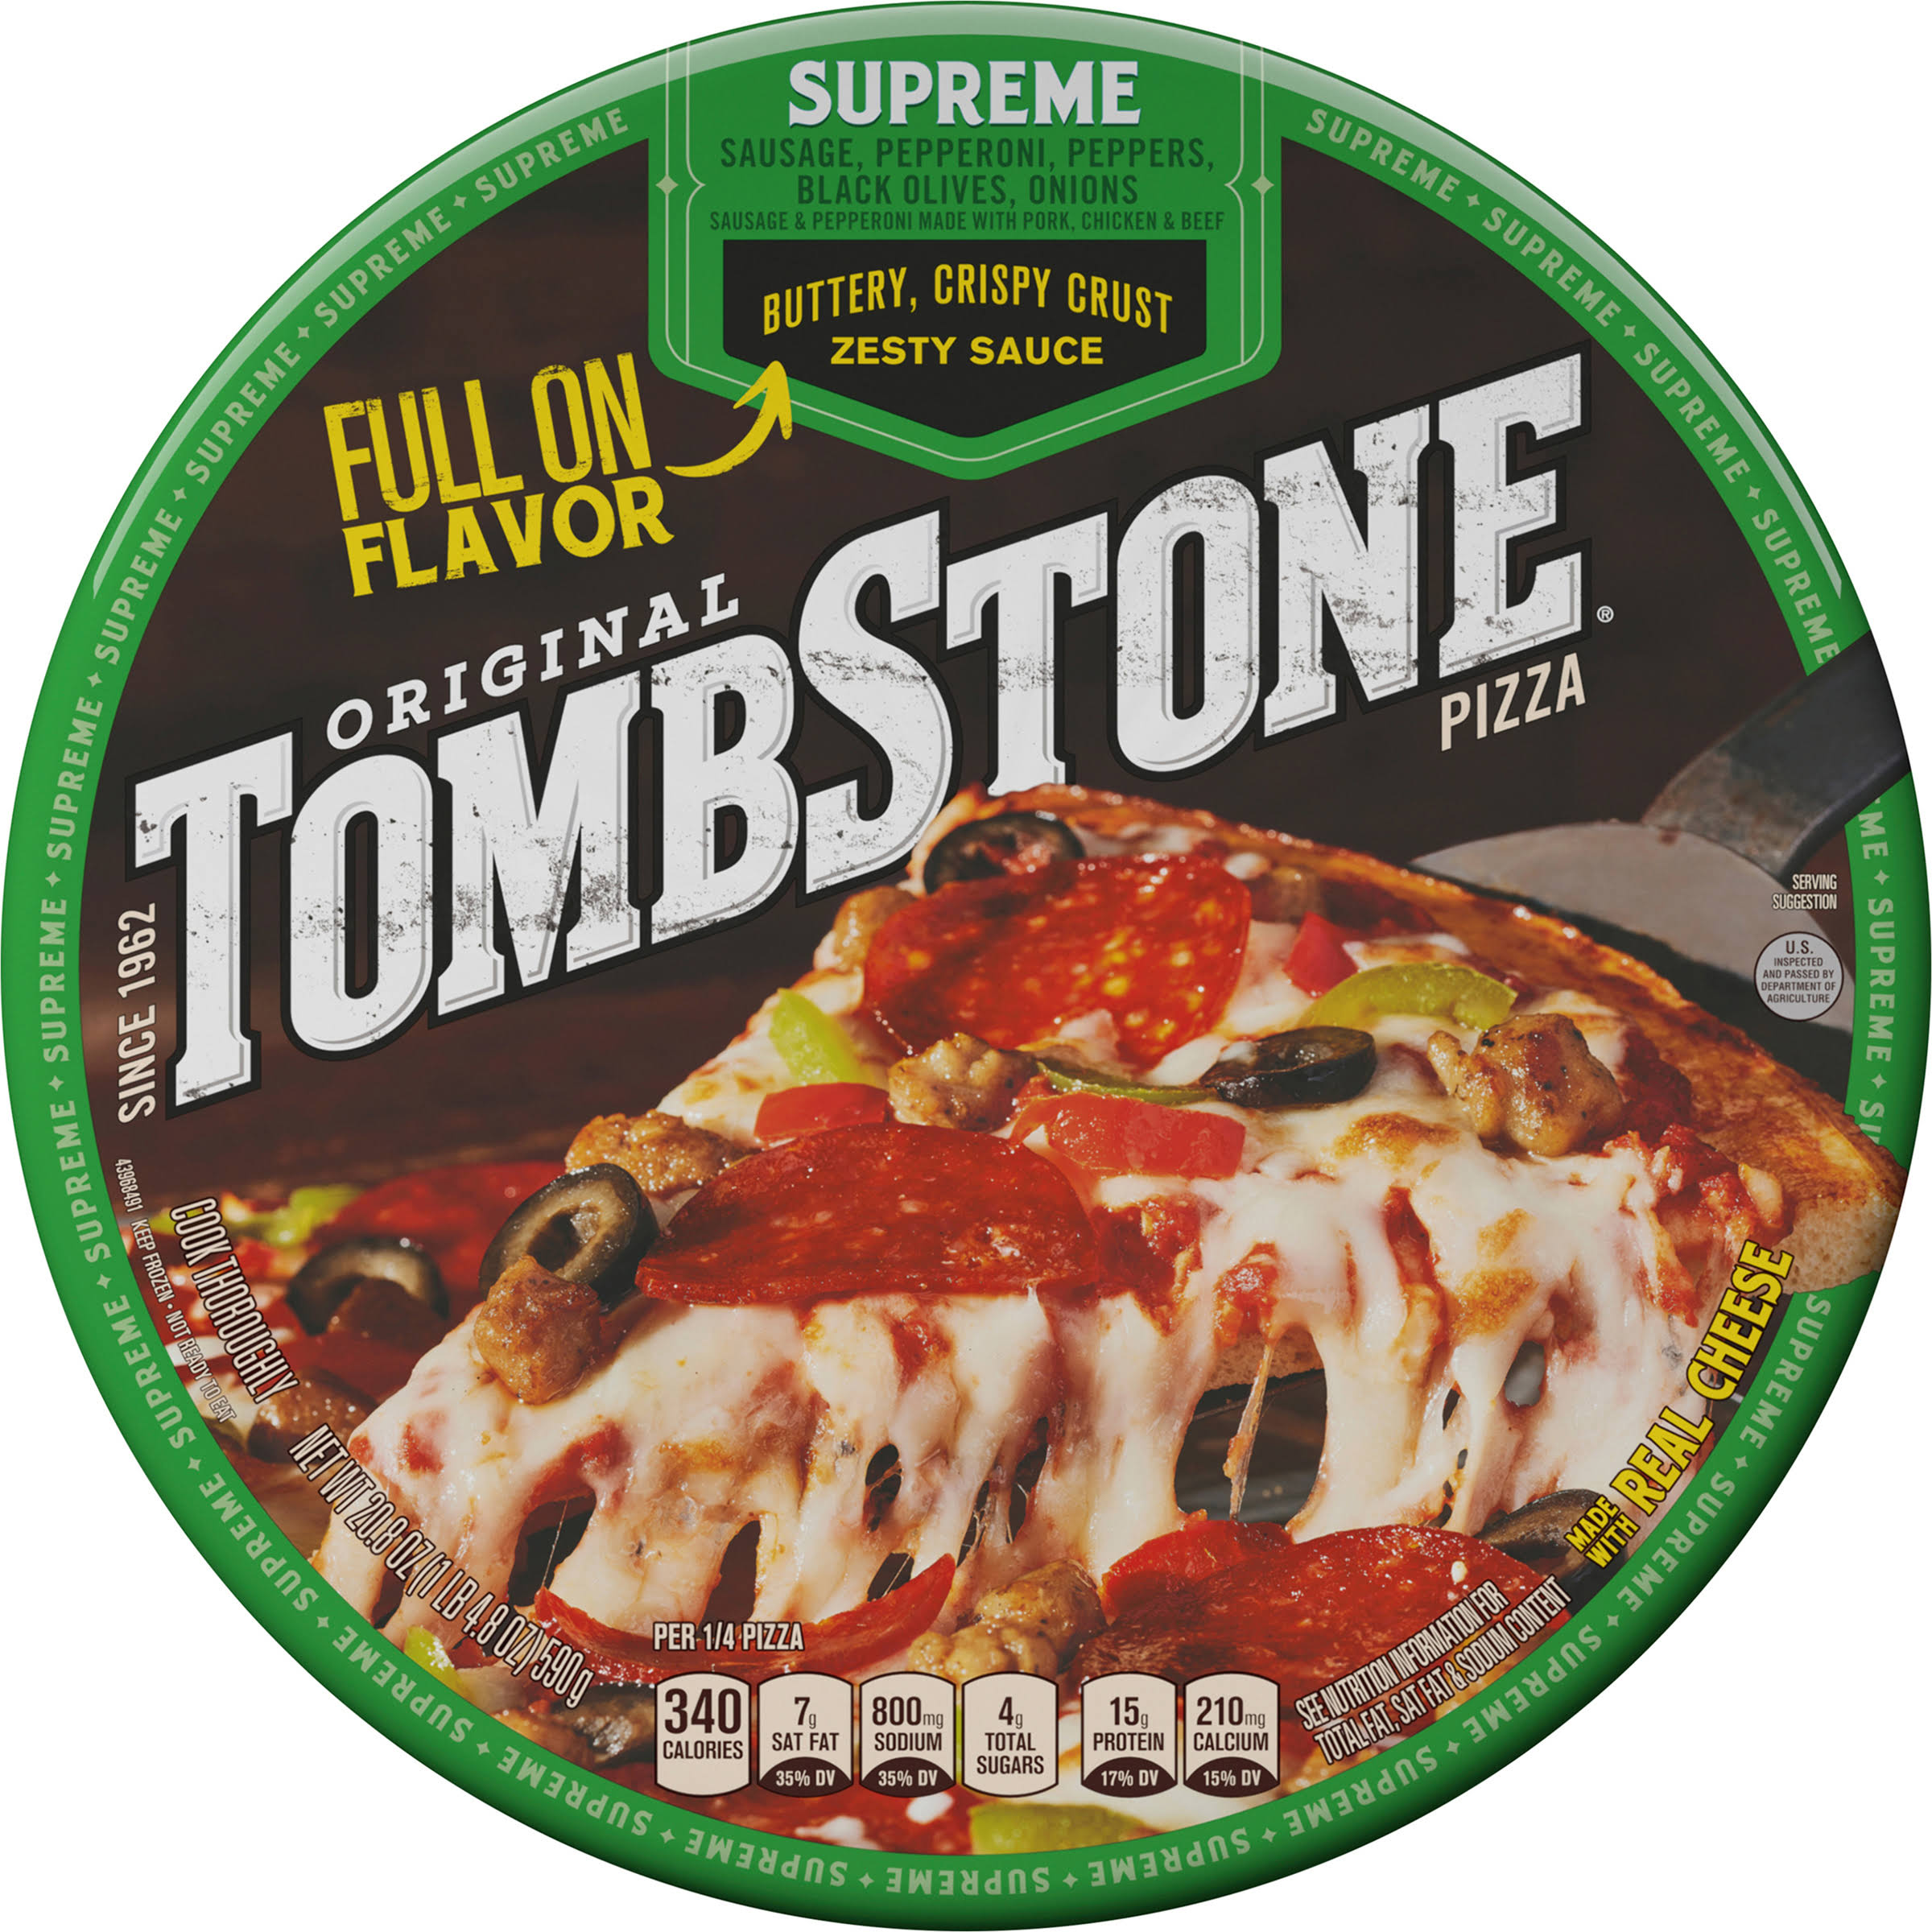 Tombstone Pizza, Original, Supreme - 20.8 oz